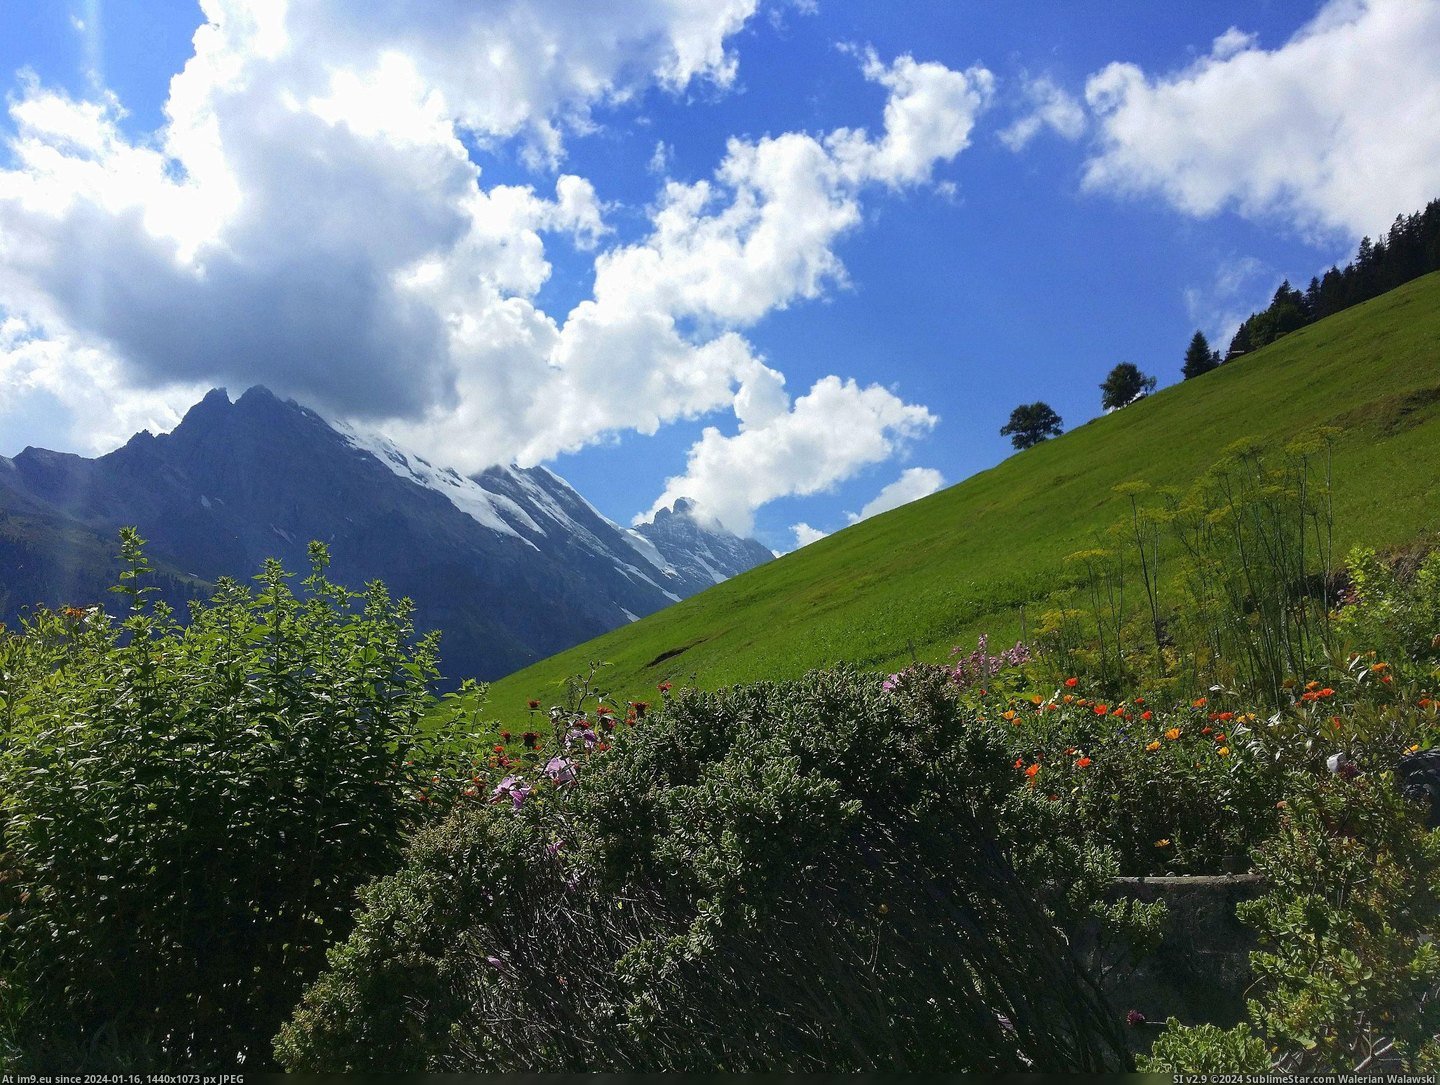 #Mountain #Switzerland #Gimmelwald #Hillside #Grassy [Earthporn] The grassy mountain hillside of Gimmelwald, Switzerland [OC] [2476 x 1857] Pic. (Bild von album My r/EARTHPORN favs))